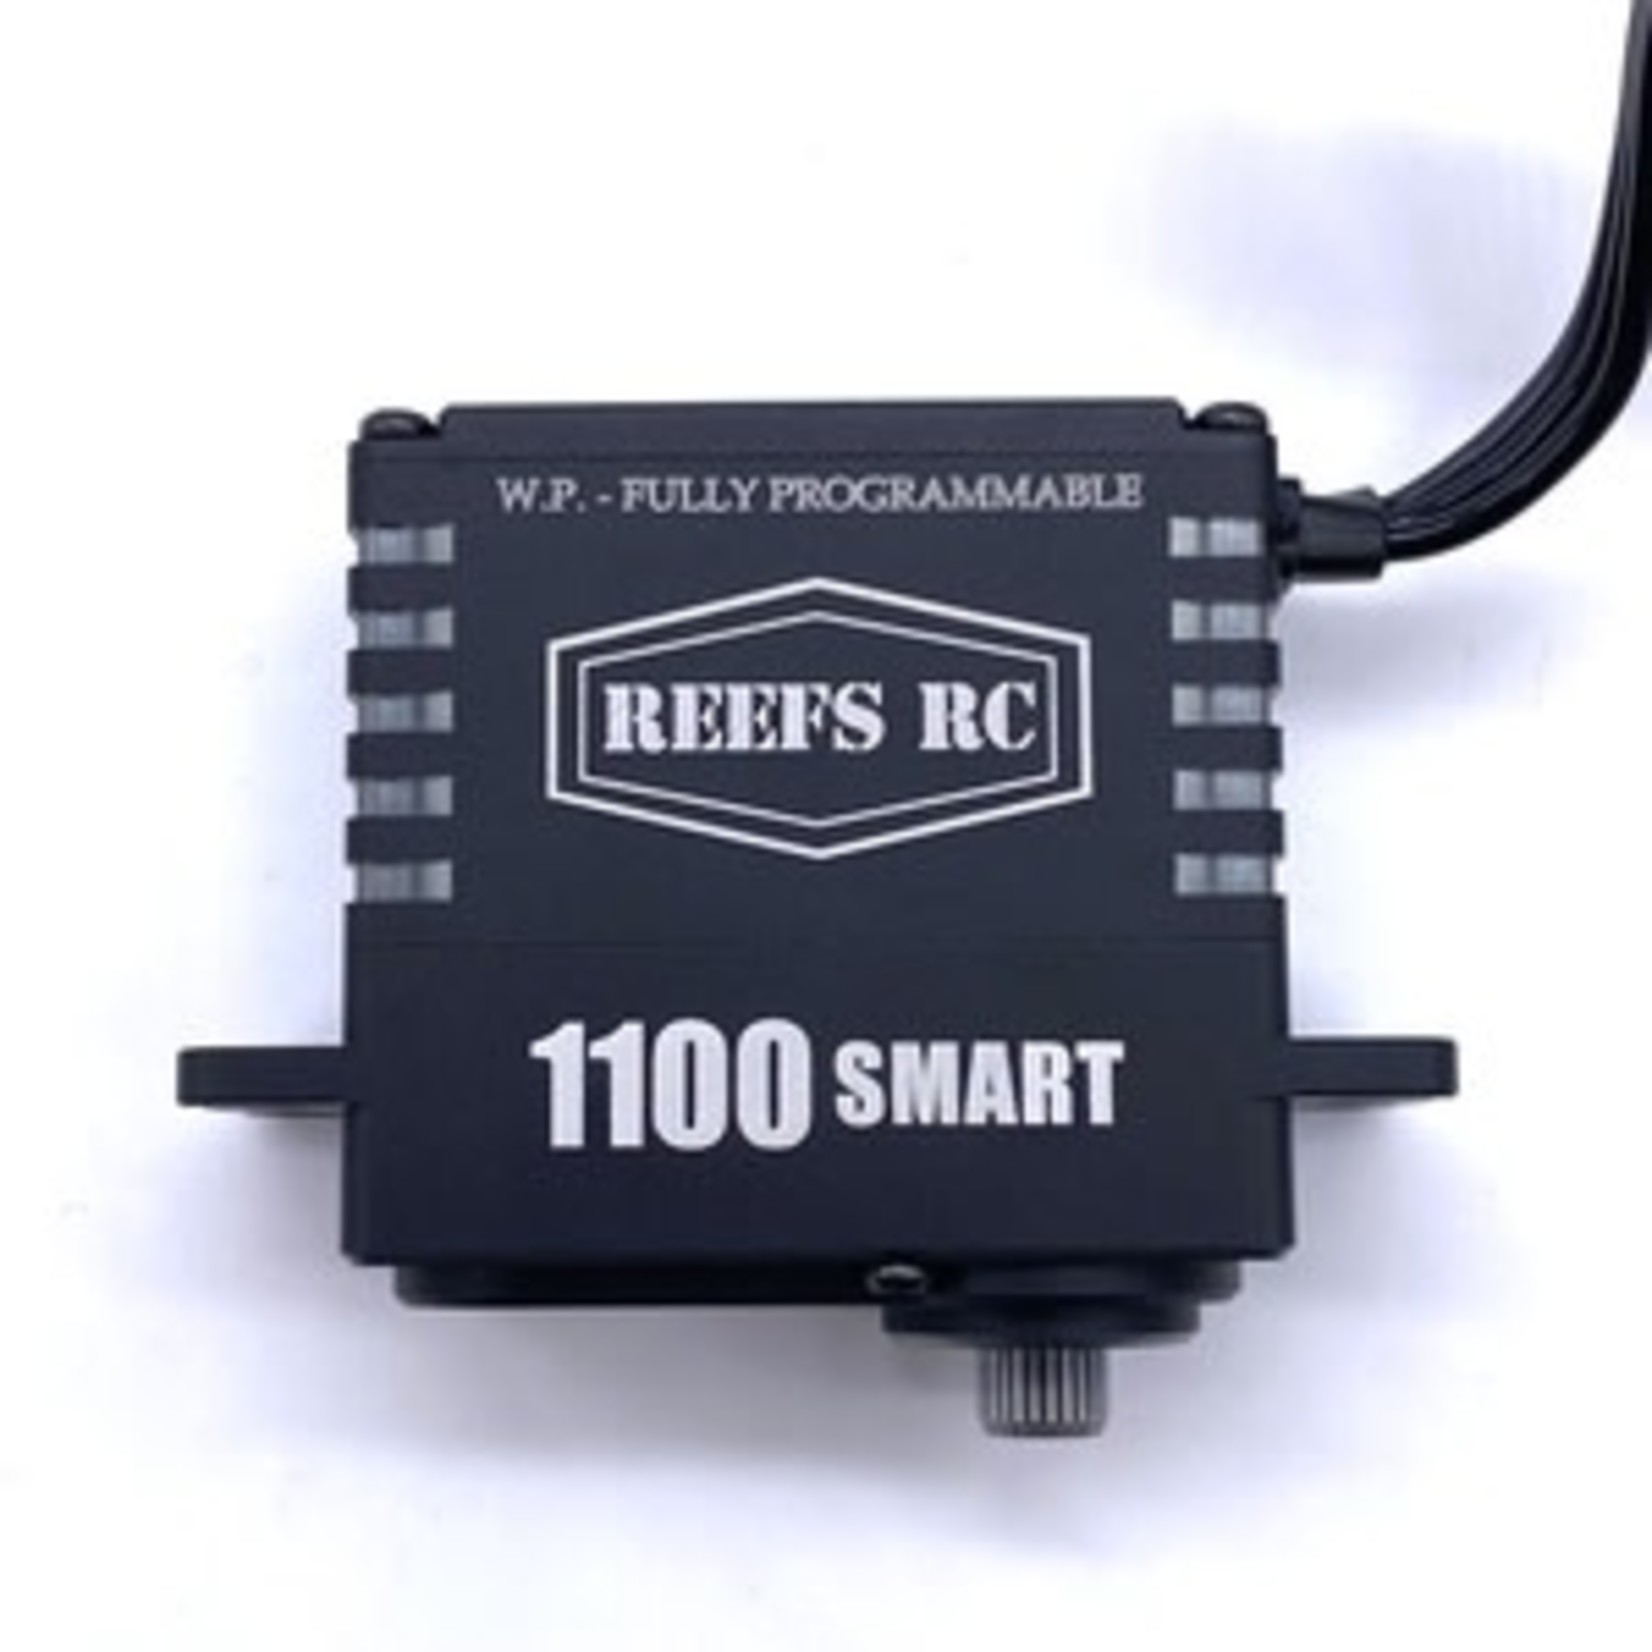 Reefs RC Reefs RC 1100 Smart Servo & Winch Combo #REEFS119